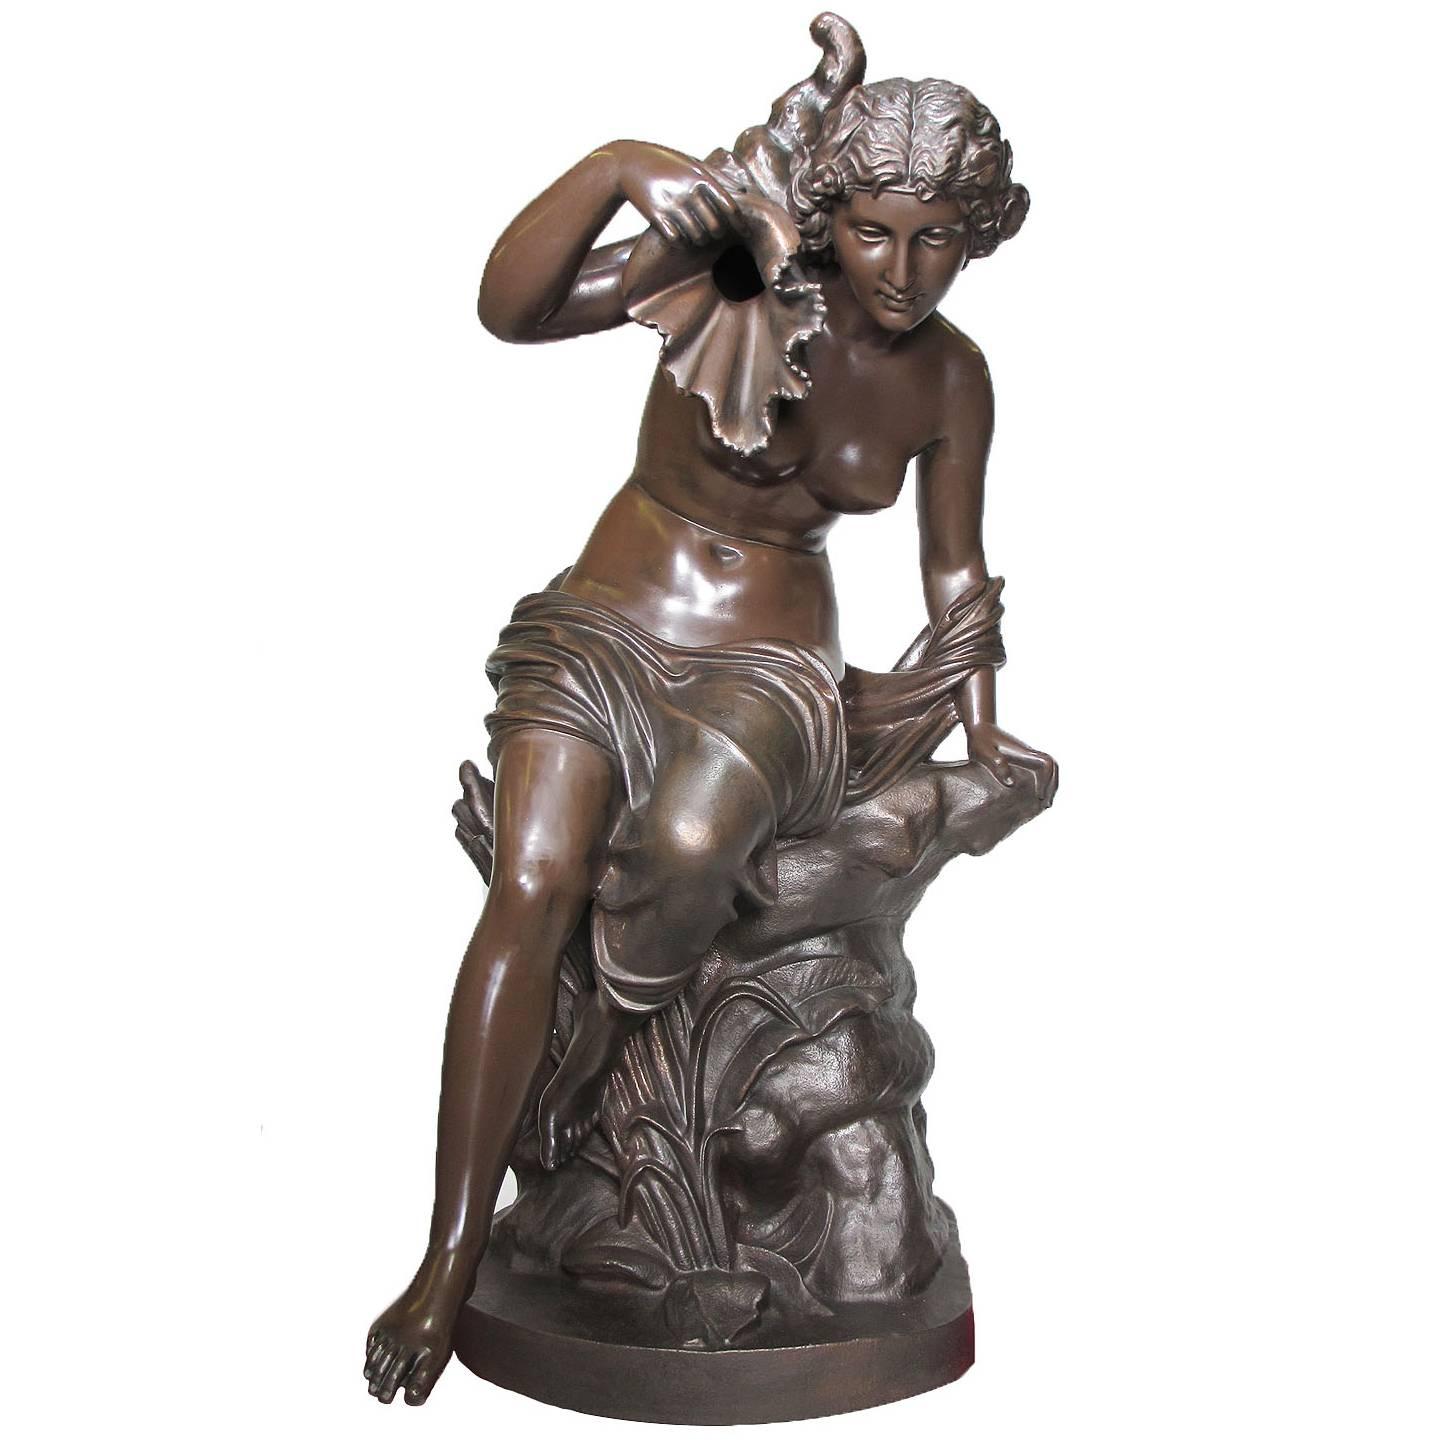 Grande figurine de fontaine française en fonte du XIXe siècle représentant une jeune fille nue assise